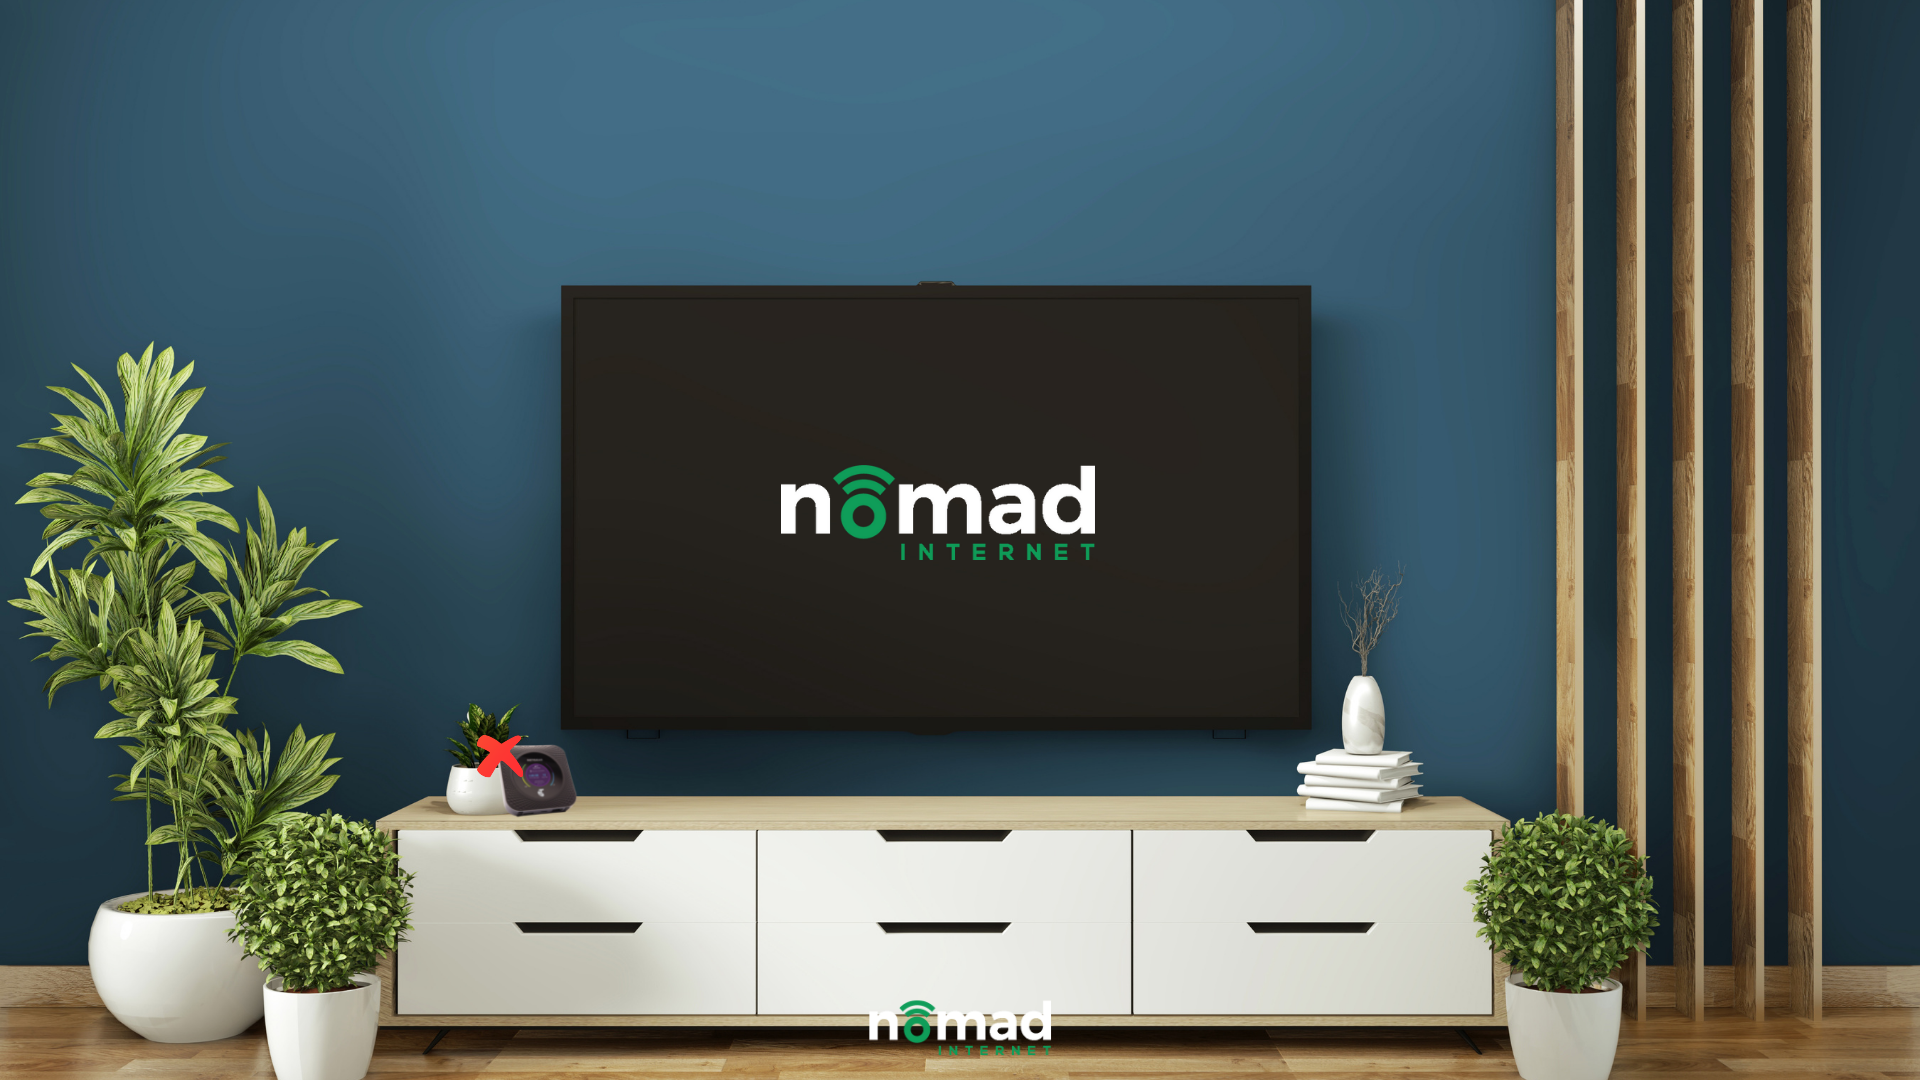 nomad internet for TV